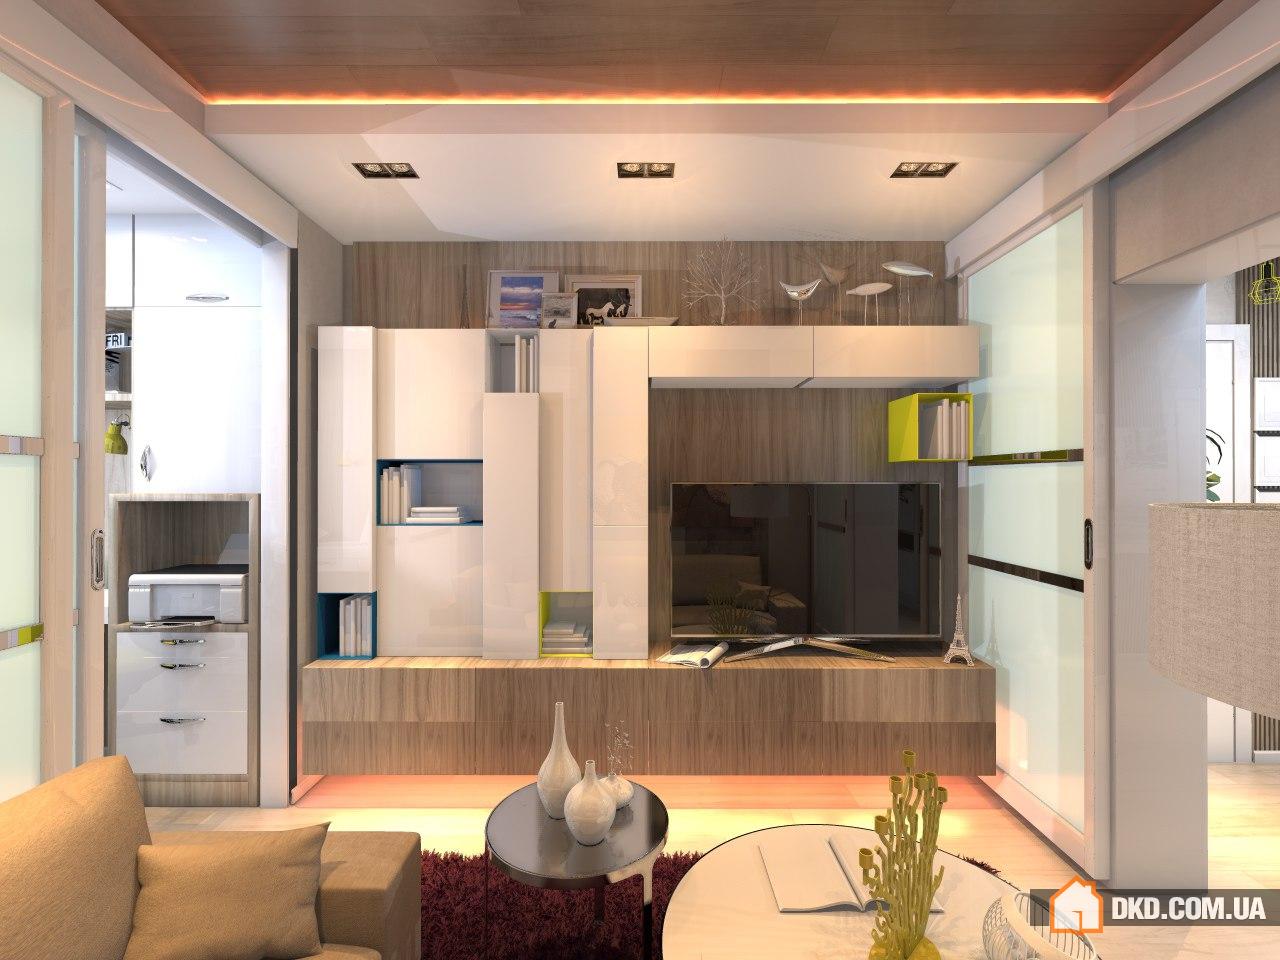 Проект бюджетной переделки квартиры, гостиная+кухня+СУ 45 кв.м.